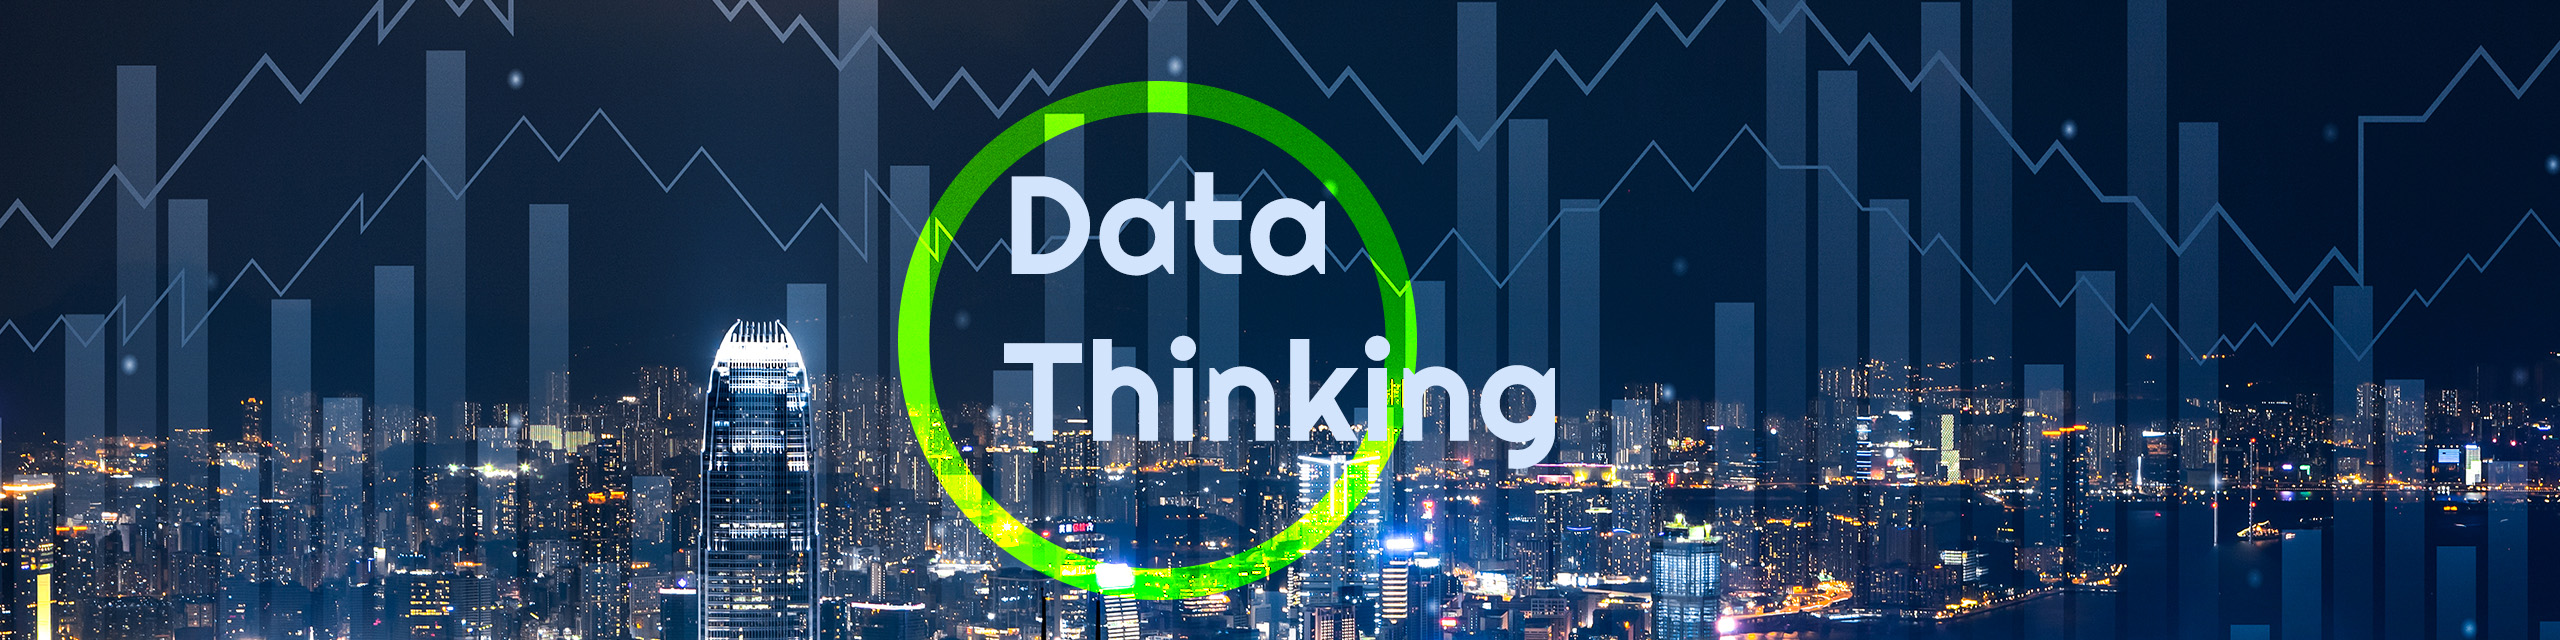 data thinking